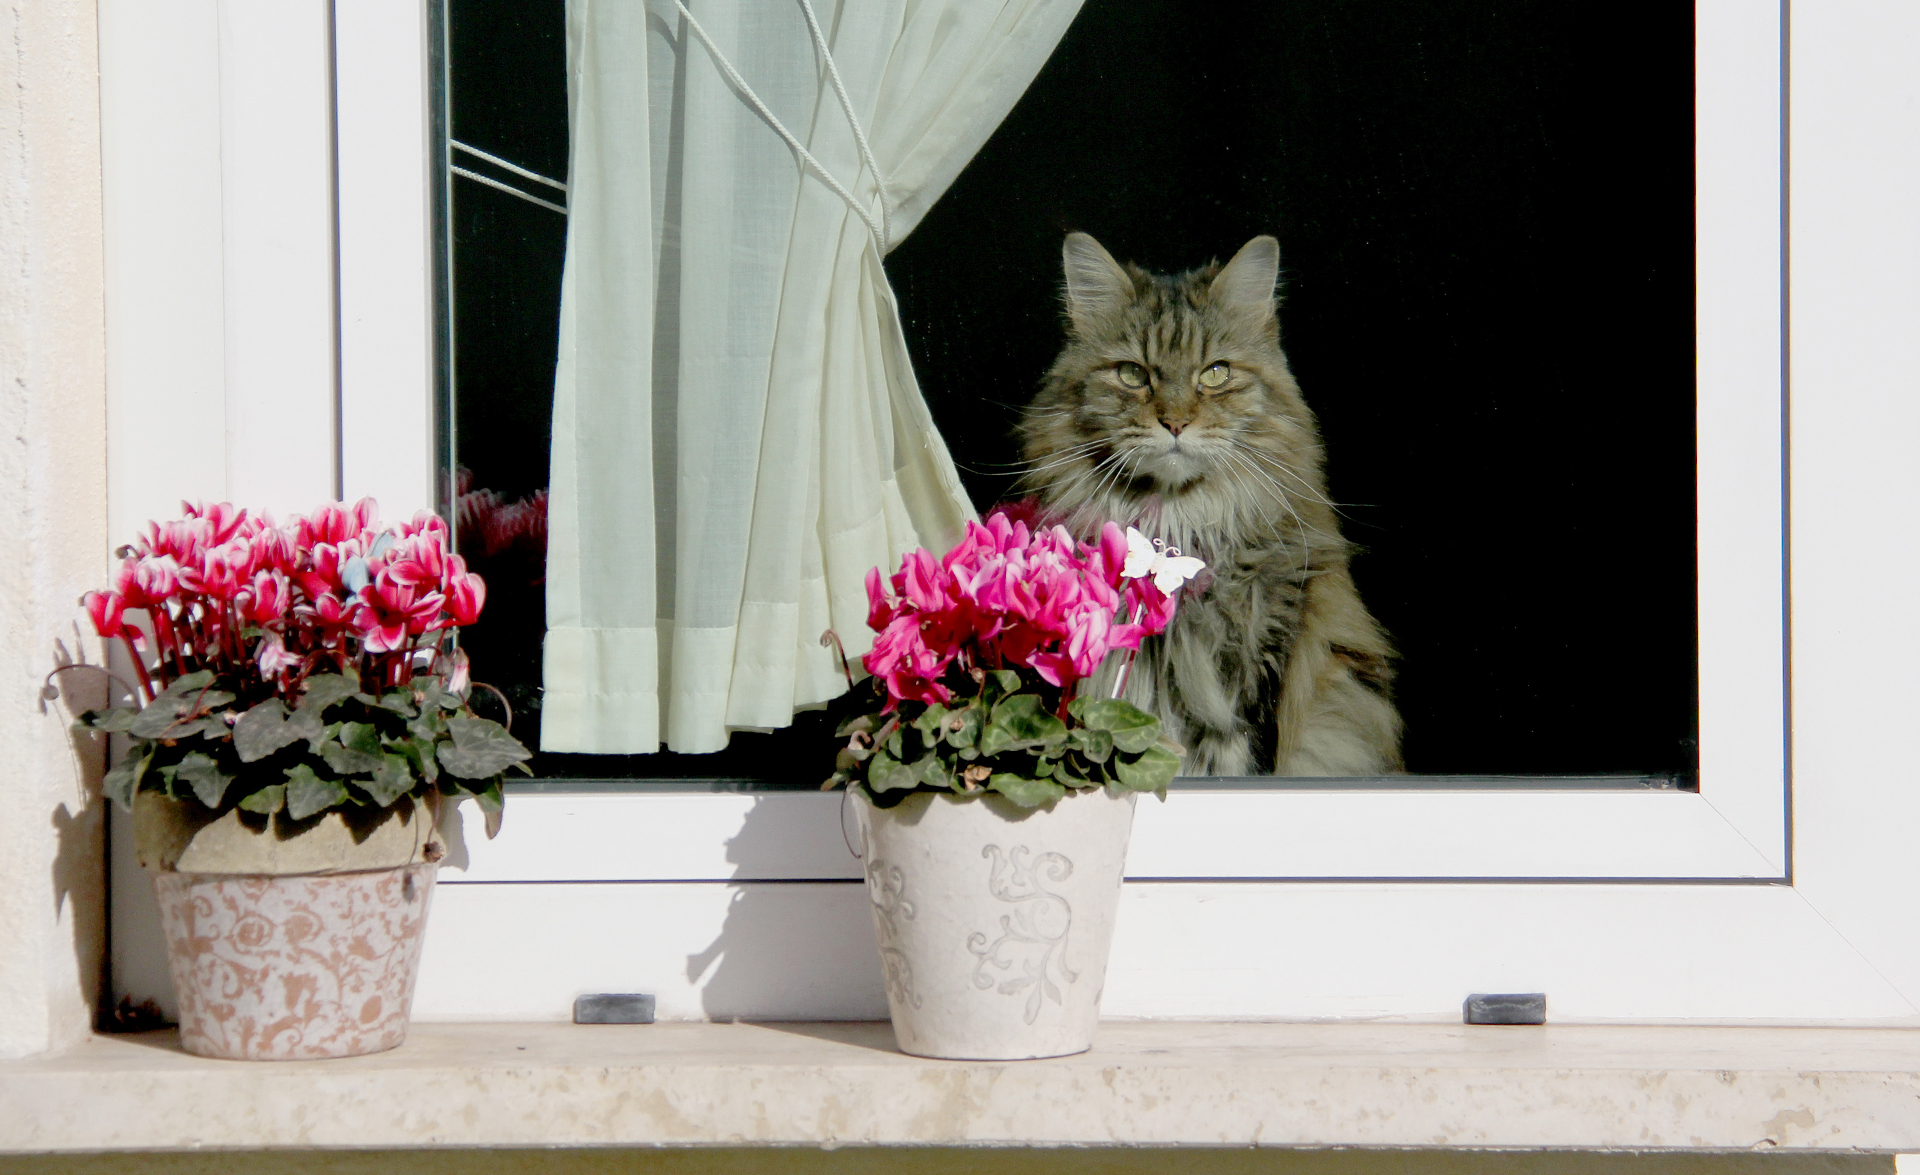 En långhårig katt tittar ut genom ett fönster. På fönsterbrädan står det två blomkrukor med rosa blommor.